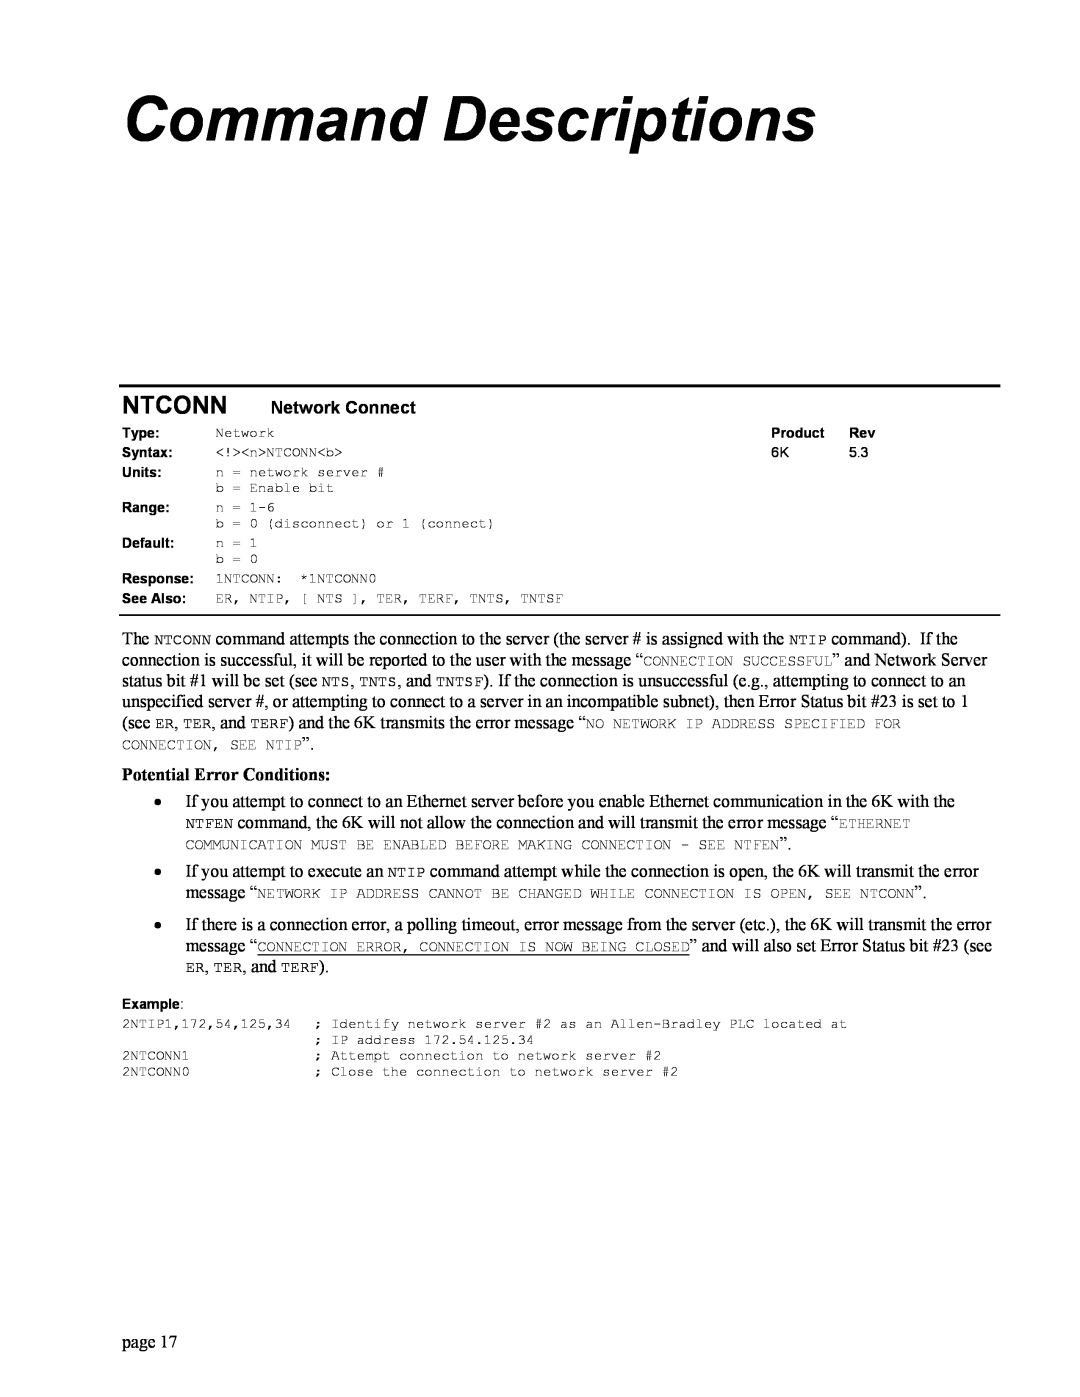 Parker Hannifin GEM6K manual Command Descriptions, Ntconn, Network Connect, Potential Error Conditions 